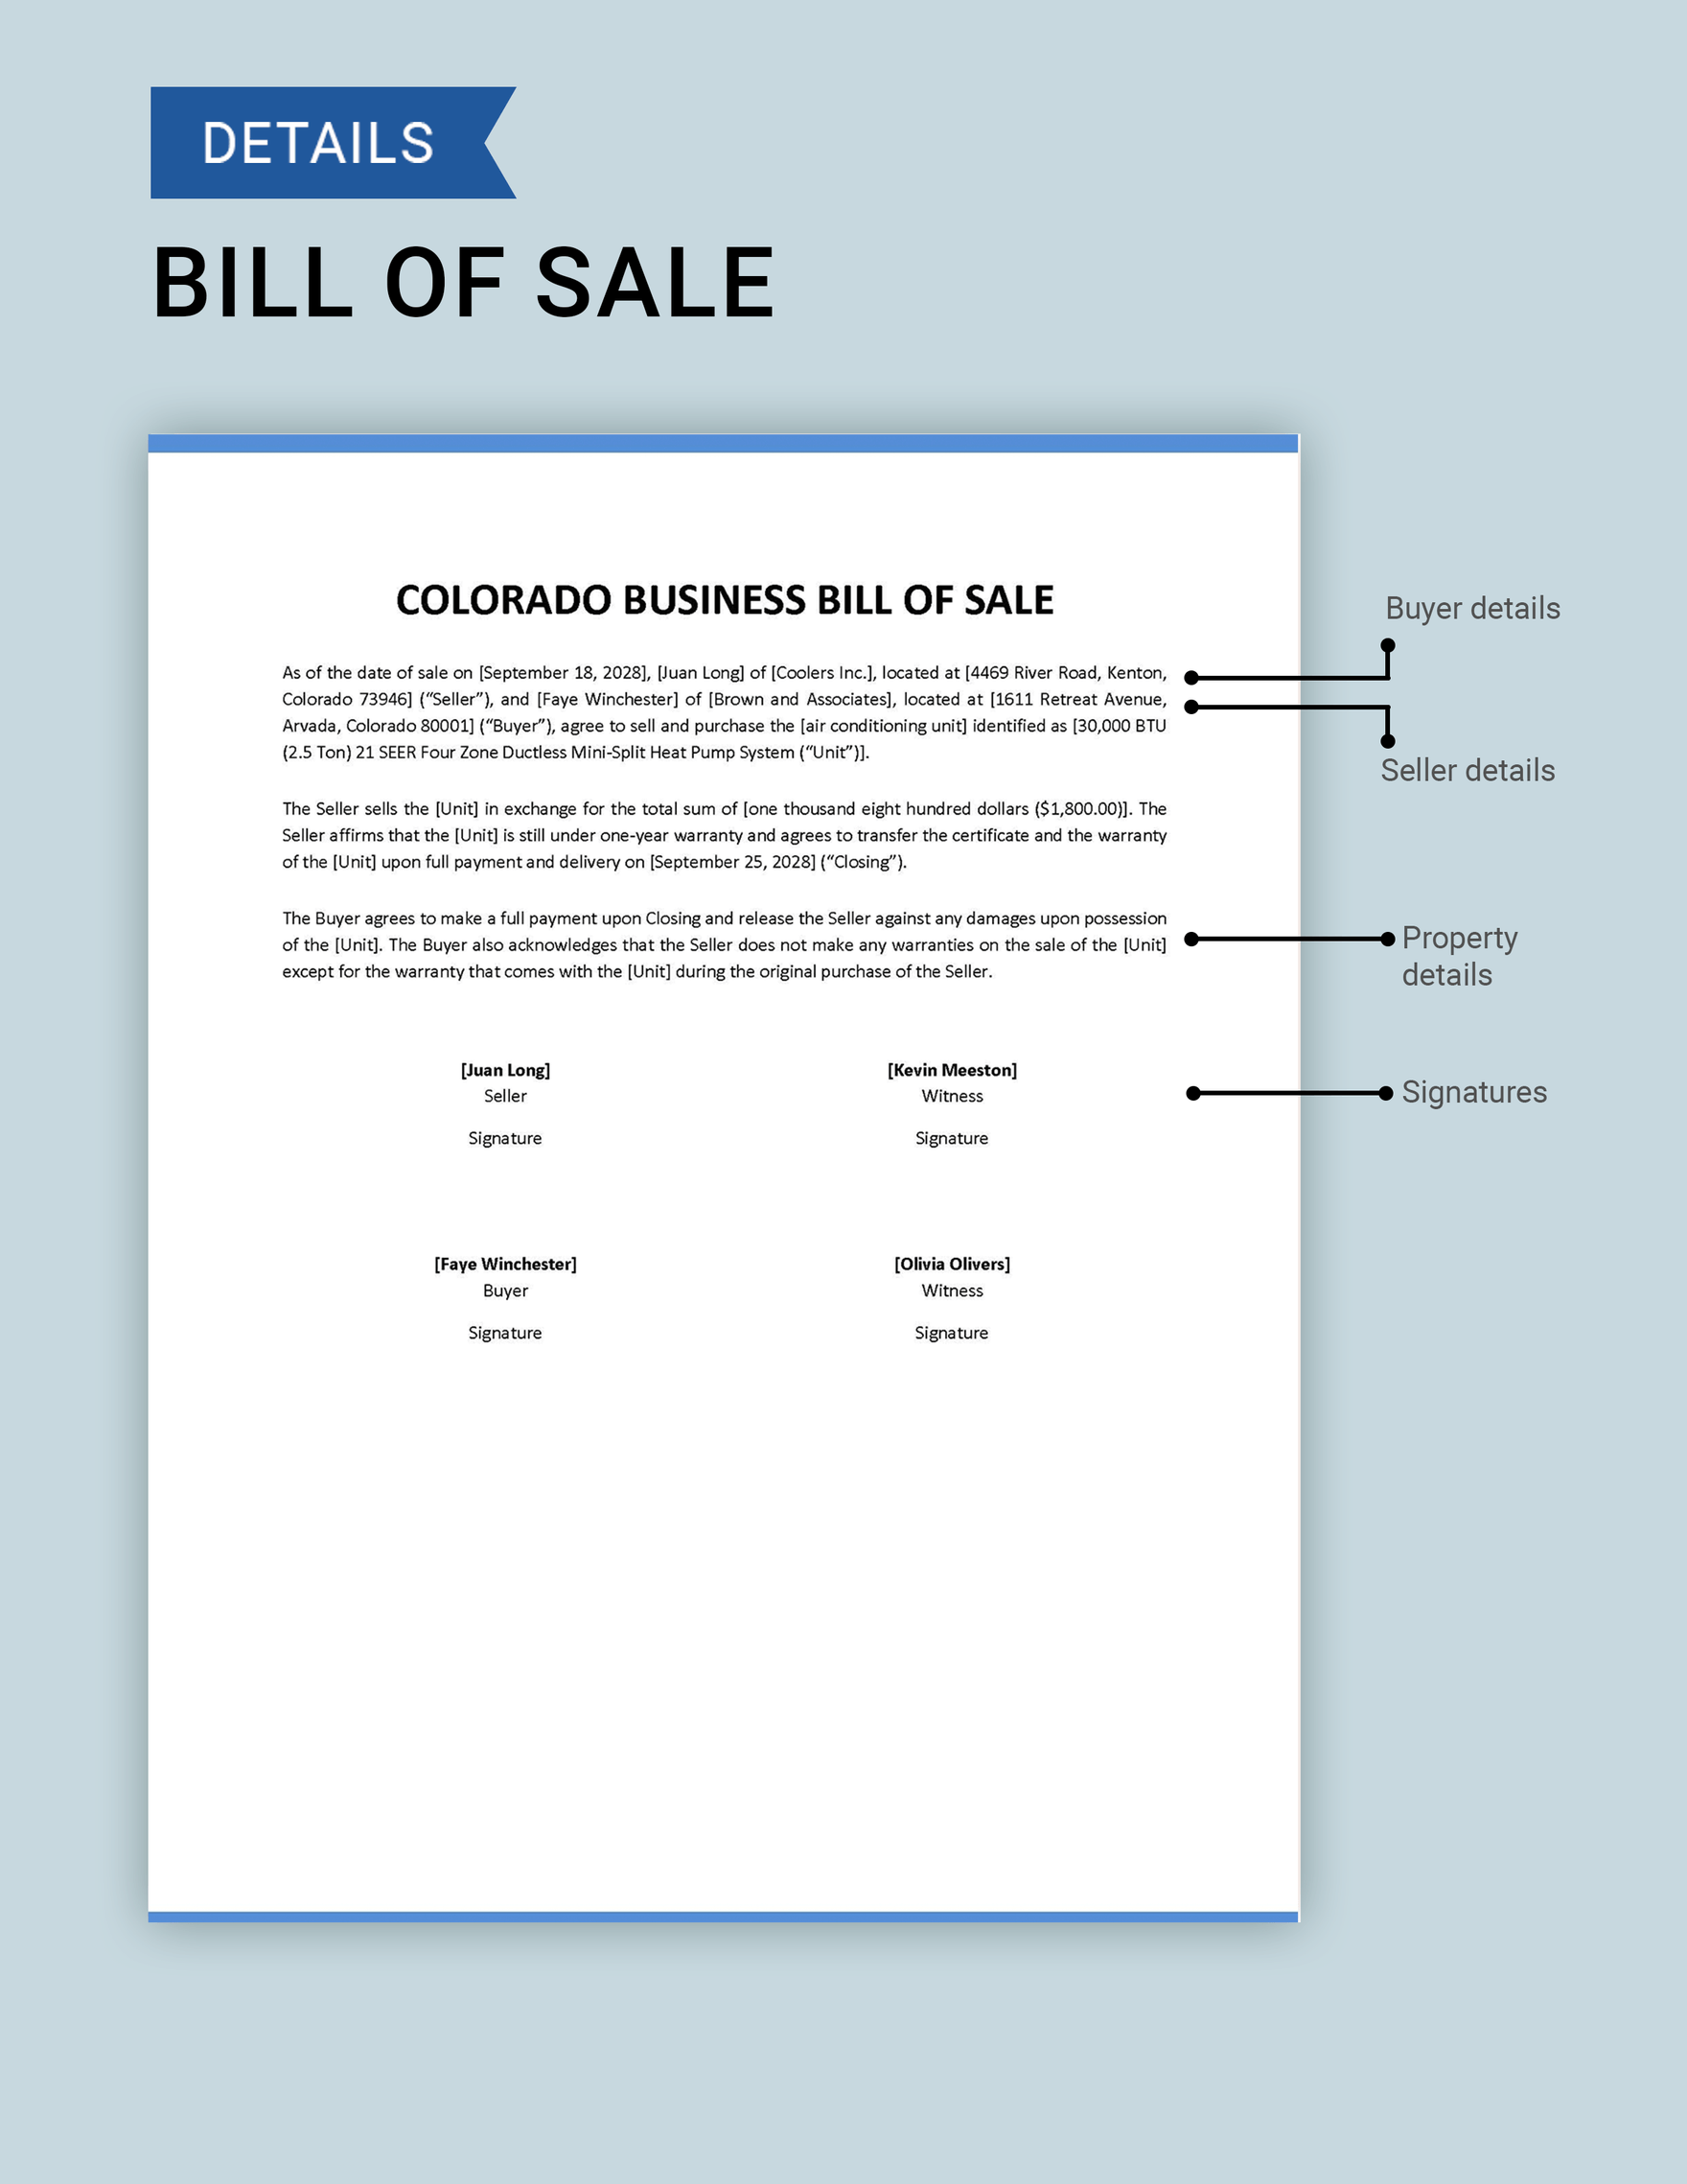 Colorado Business Bill of Sale Template